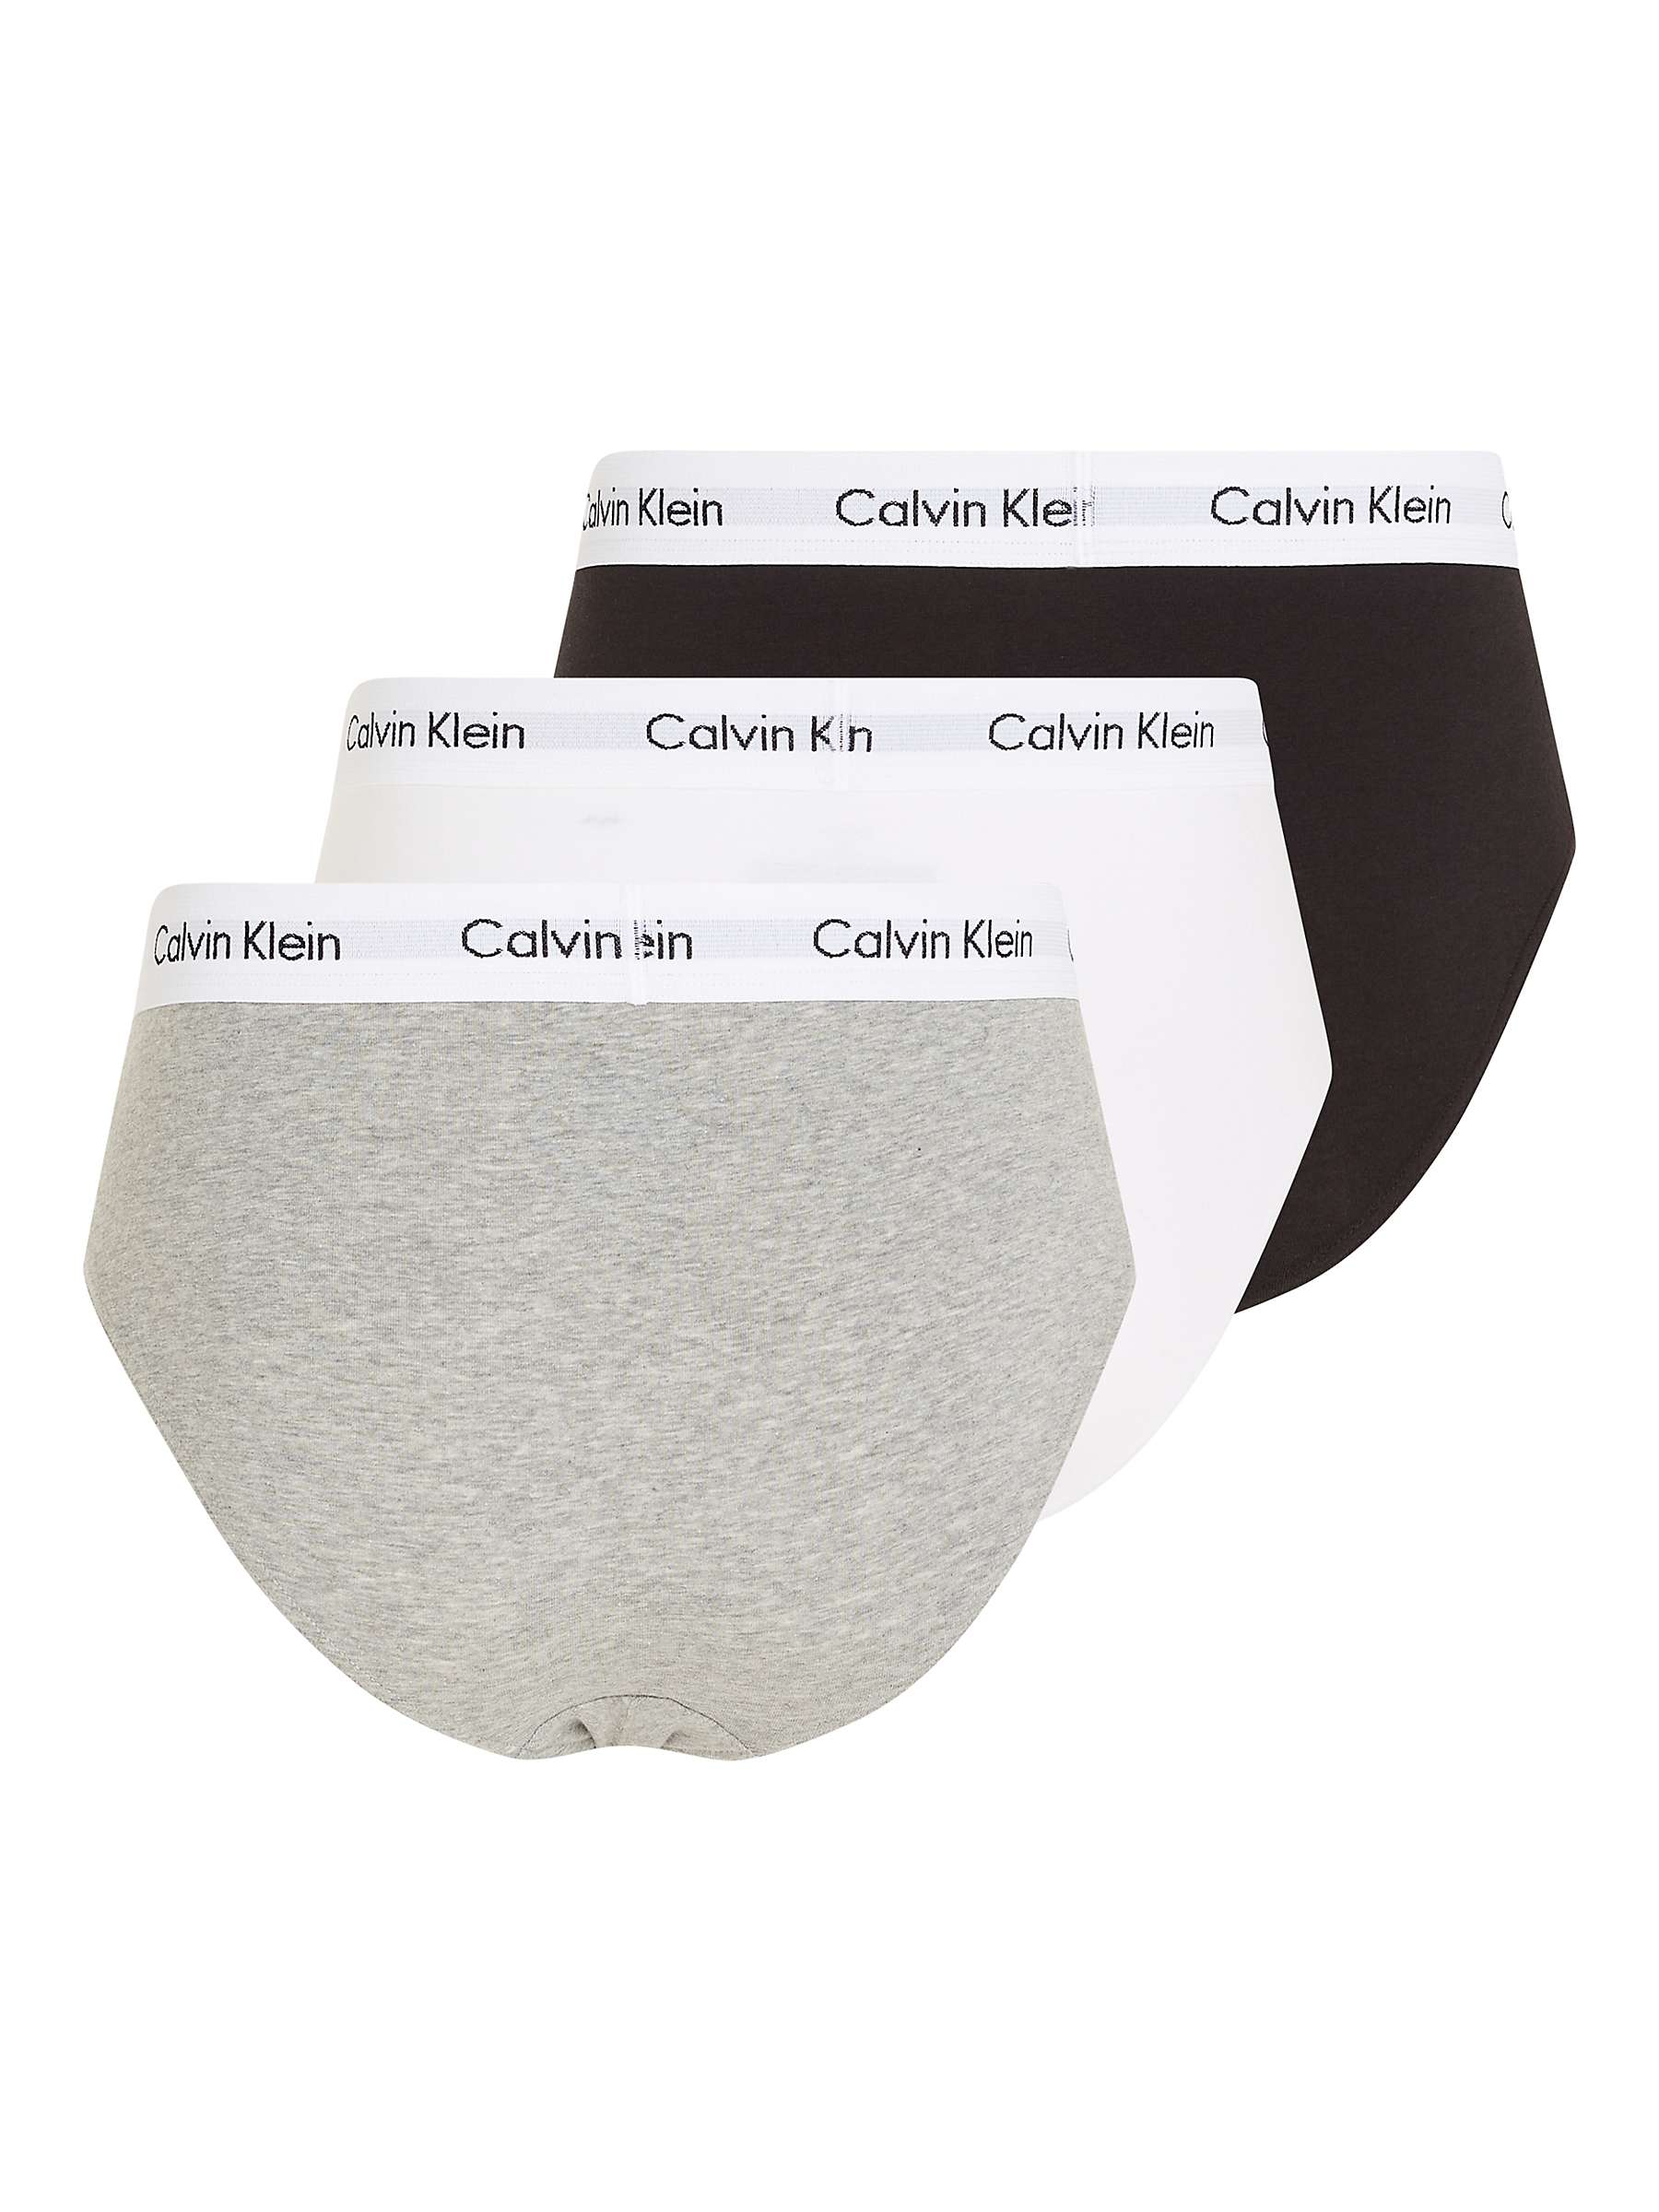 Buy Calvin Klein Underwear Cotton Briefs, Pack of 3 Online at johnlewis.com